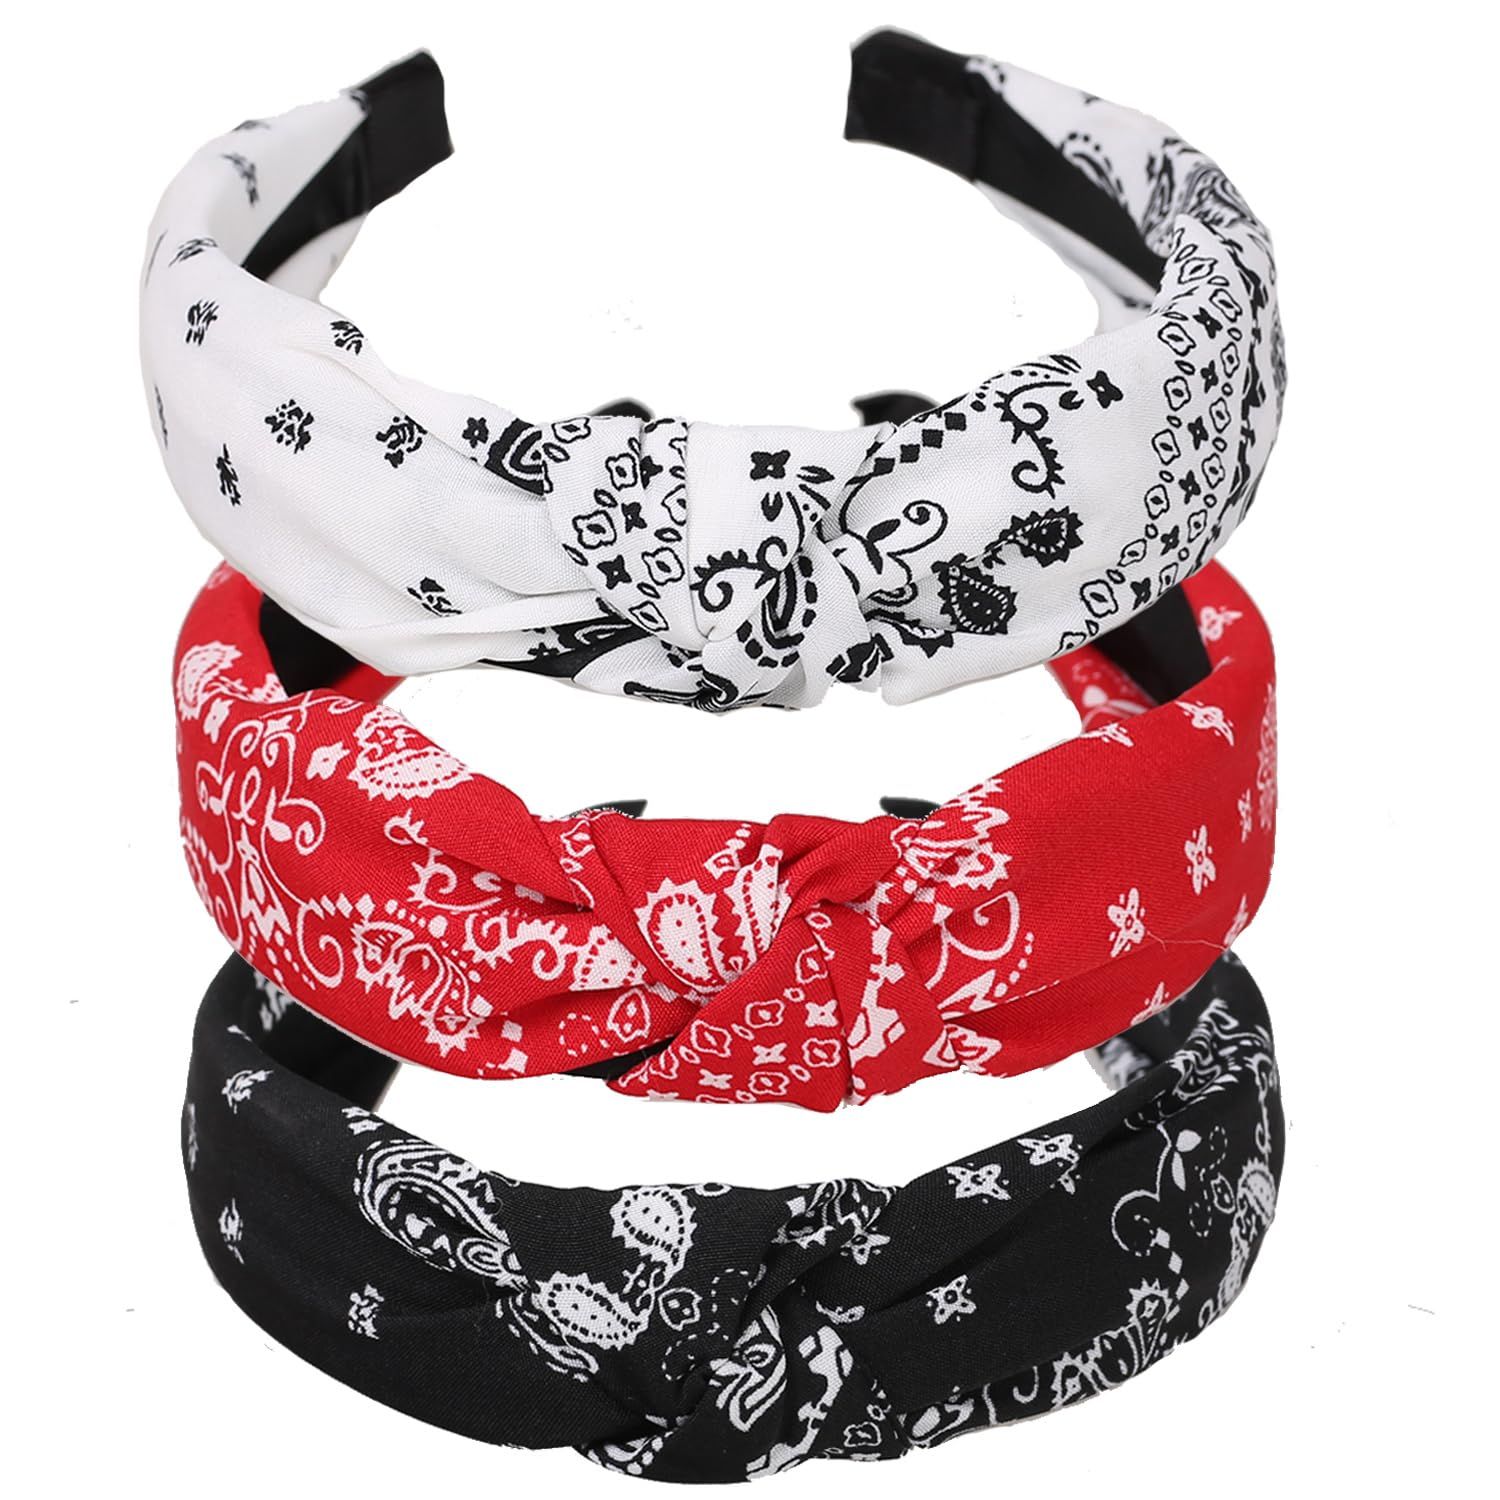 Bandana Headbands for Women Knotted Headband Fashion Chiffon Fabric Hairband for Women and Girls ... | Amazon (US)